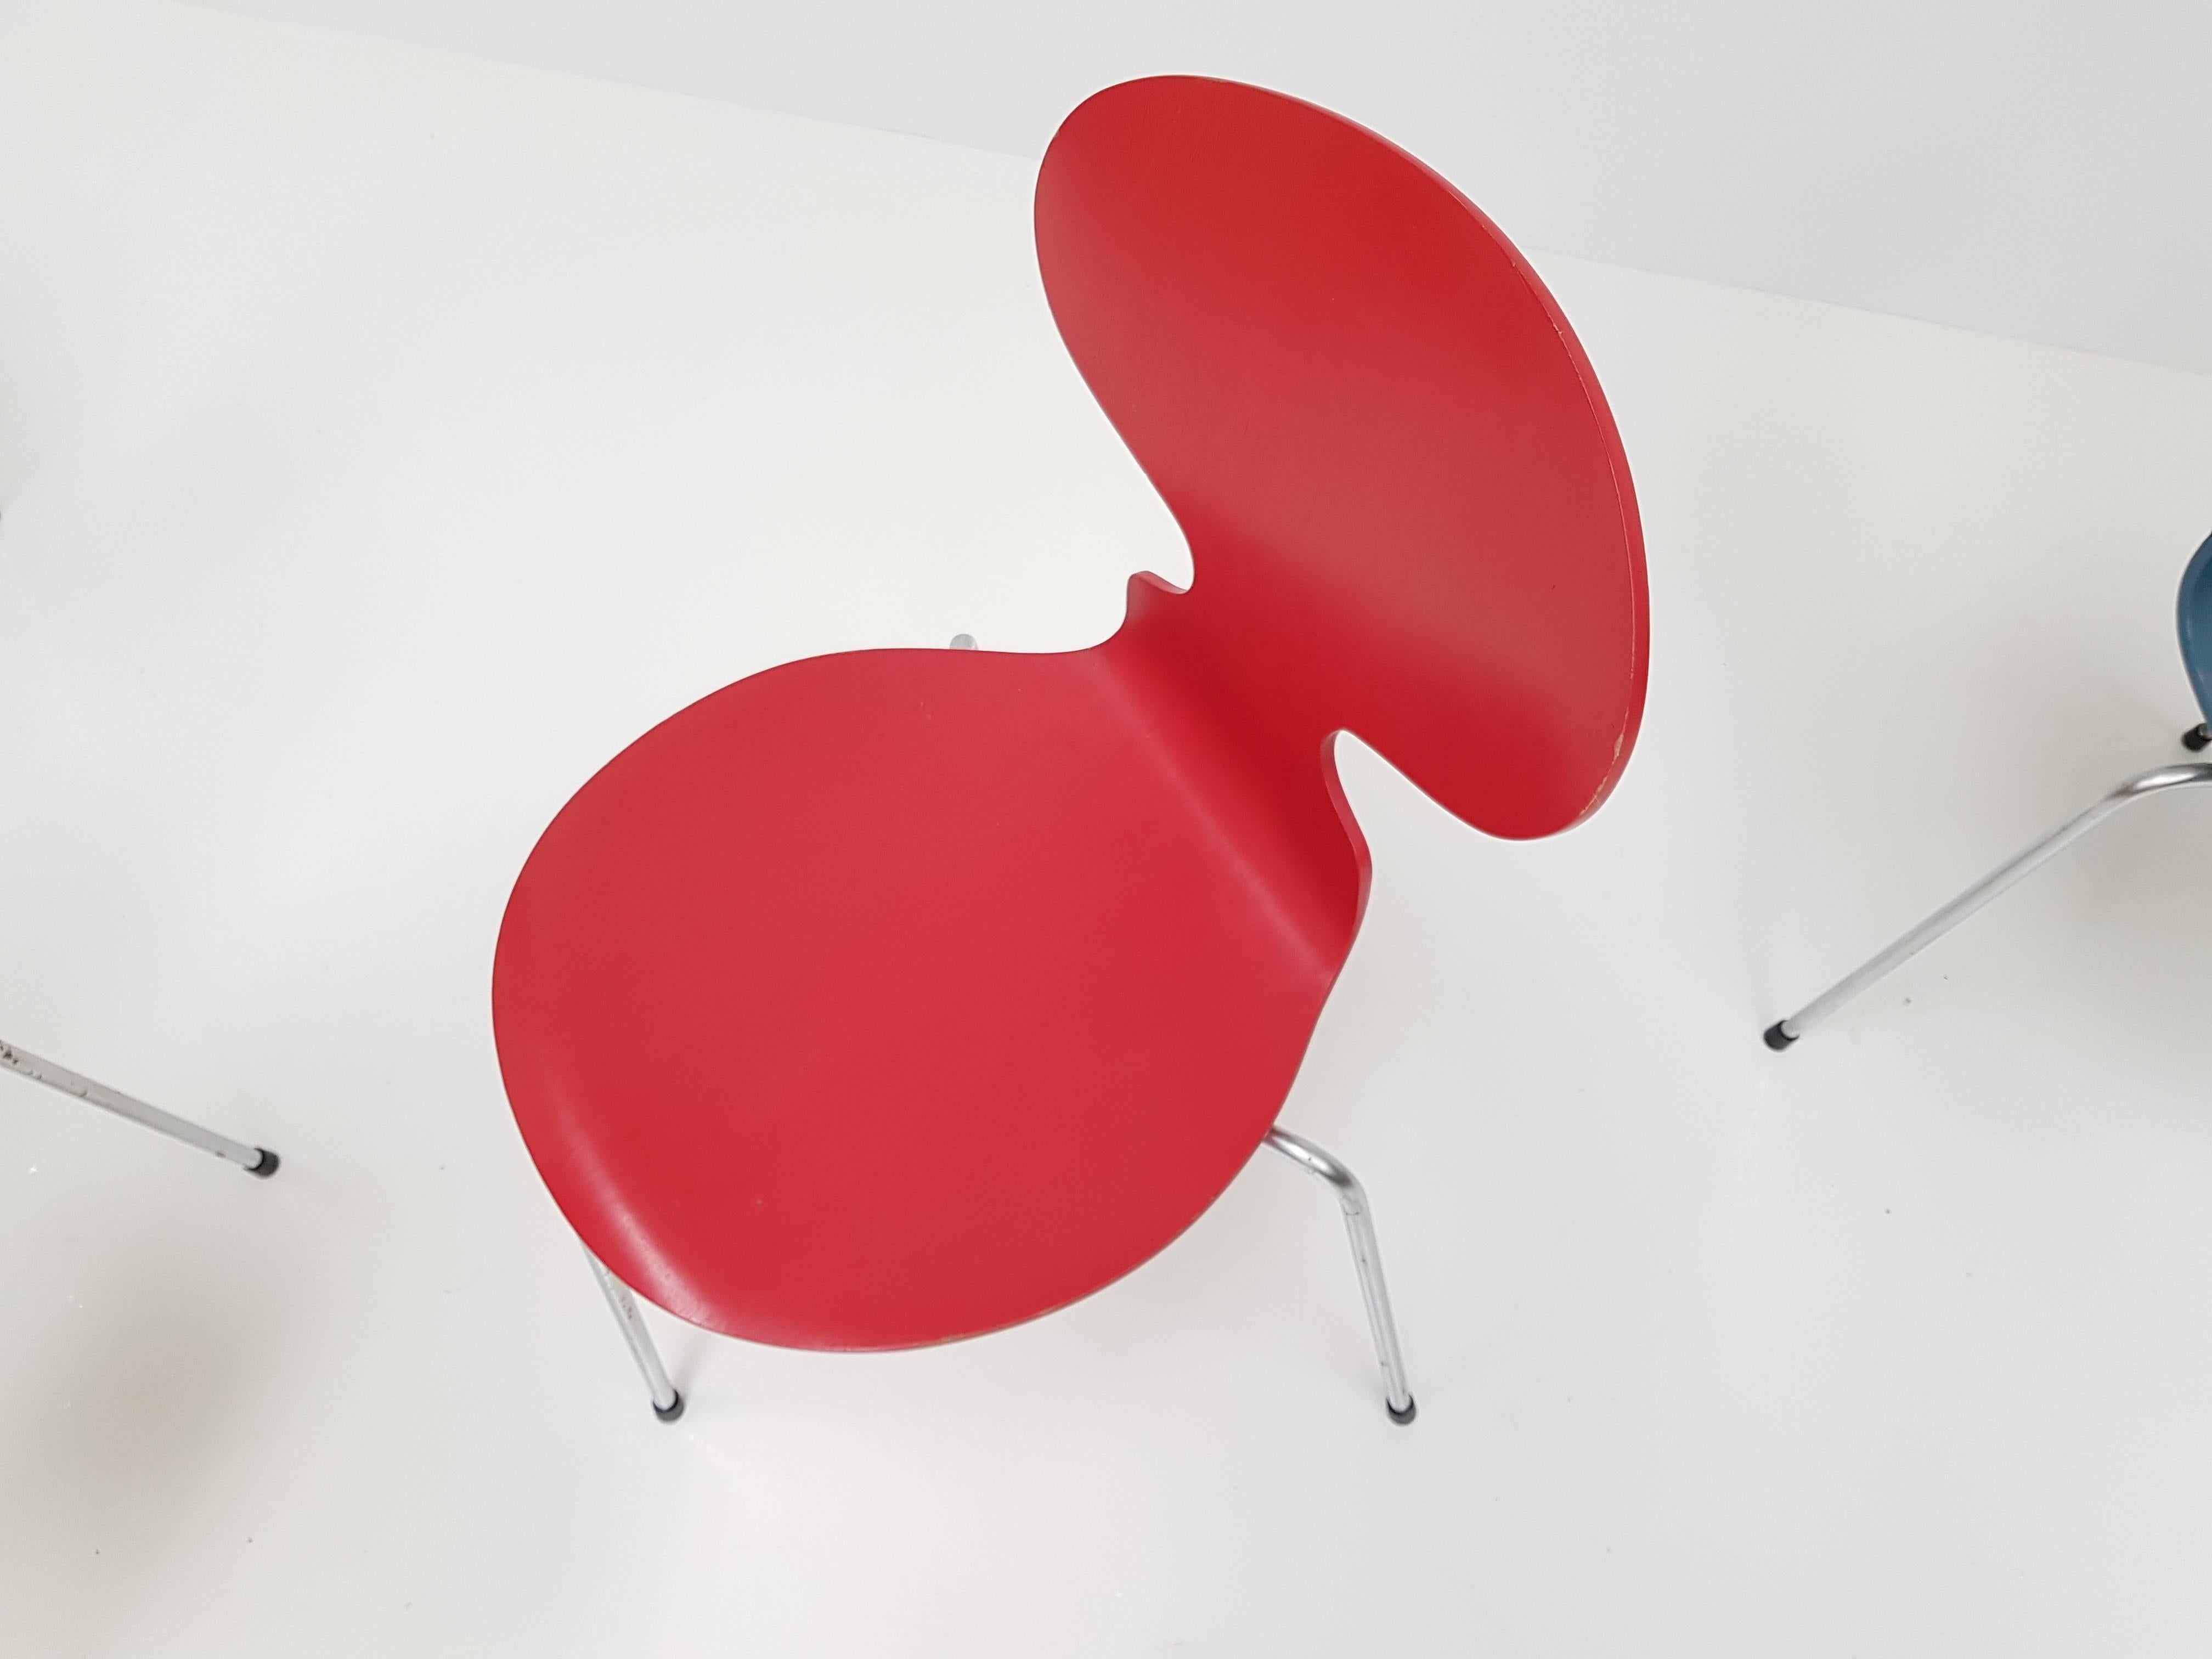 Steel Model 3100 'Ant' Chairs by Arne Jacobsen for Fritz Hansen, Designed 1952